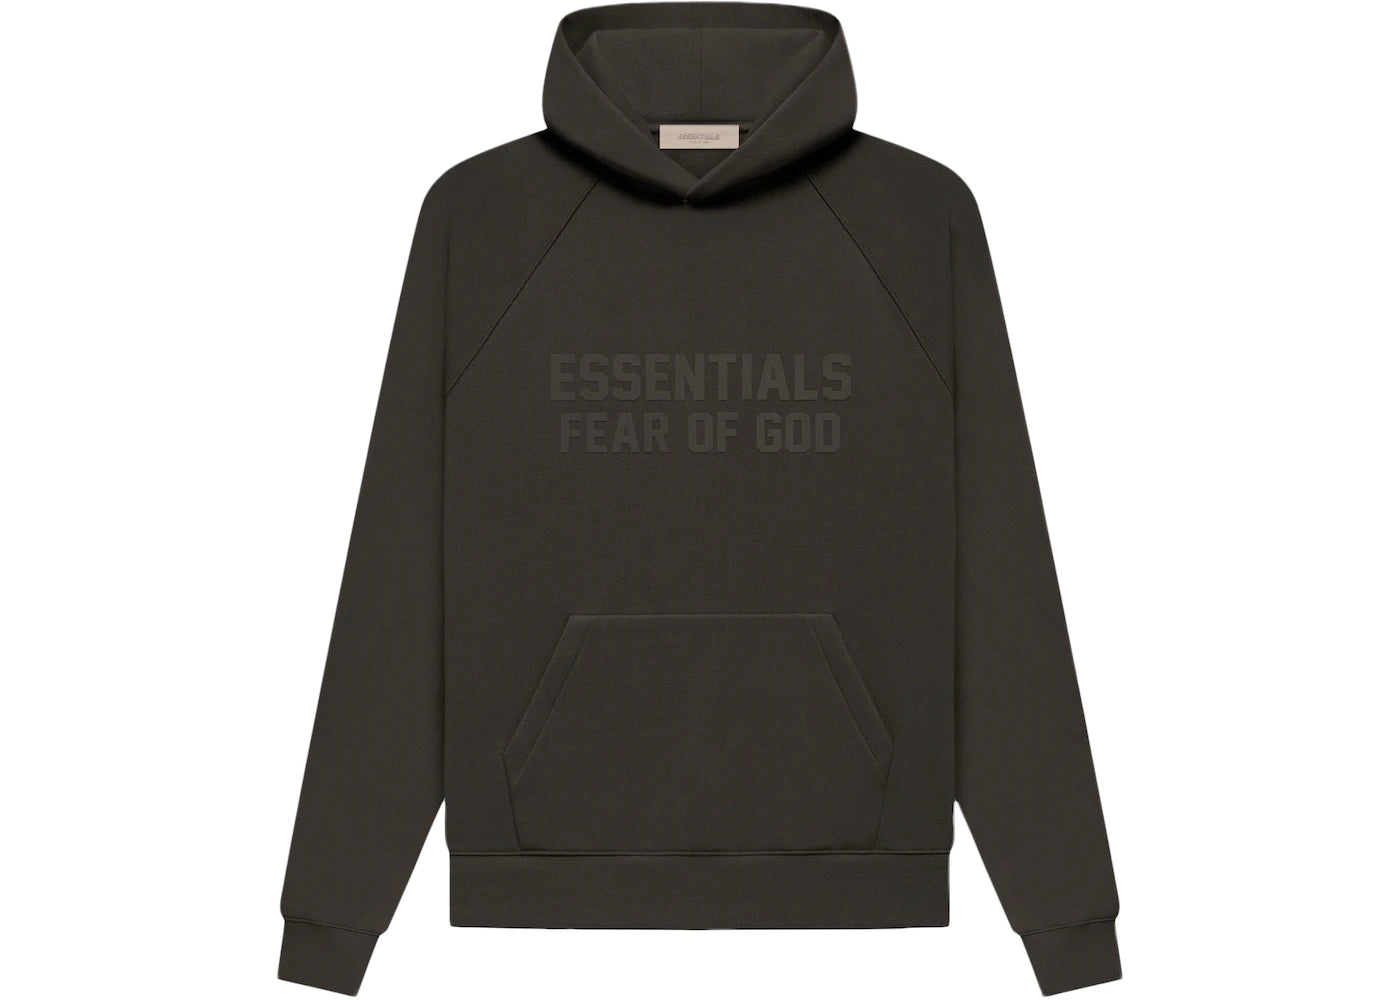 Essentials Hoodie Fear of God - Off Black FW22